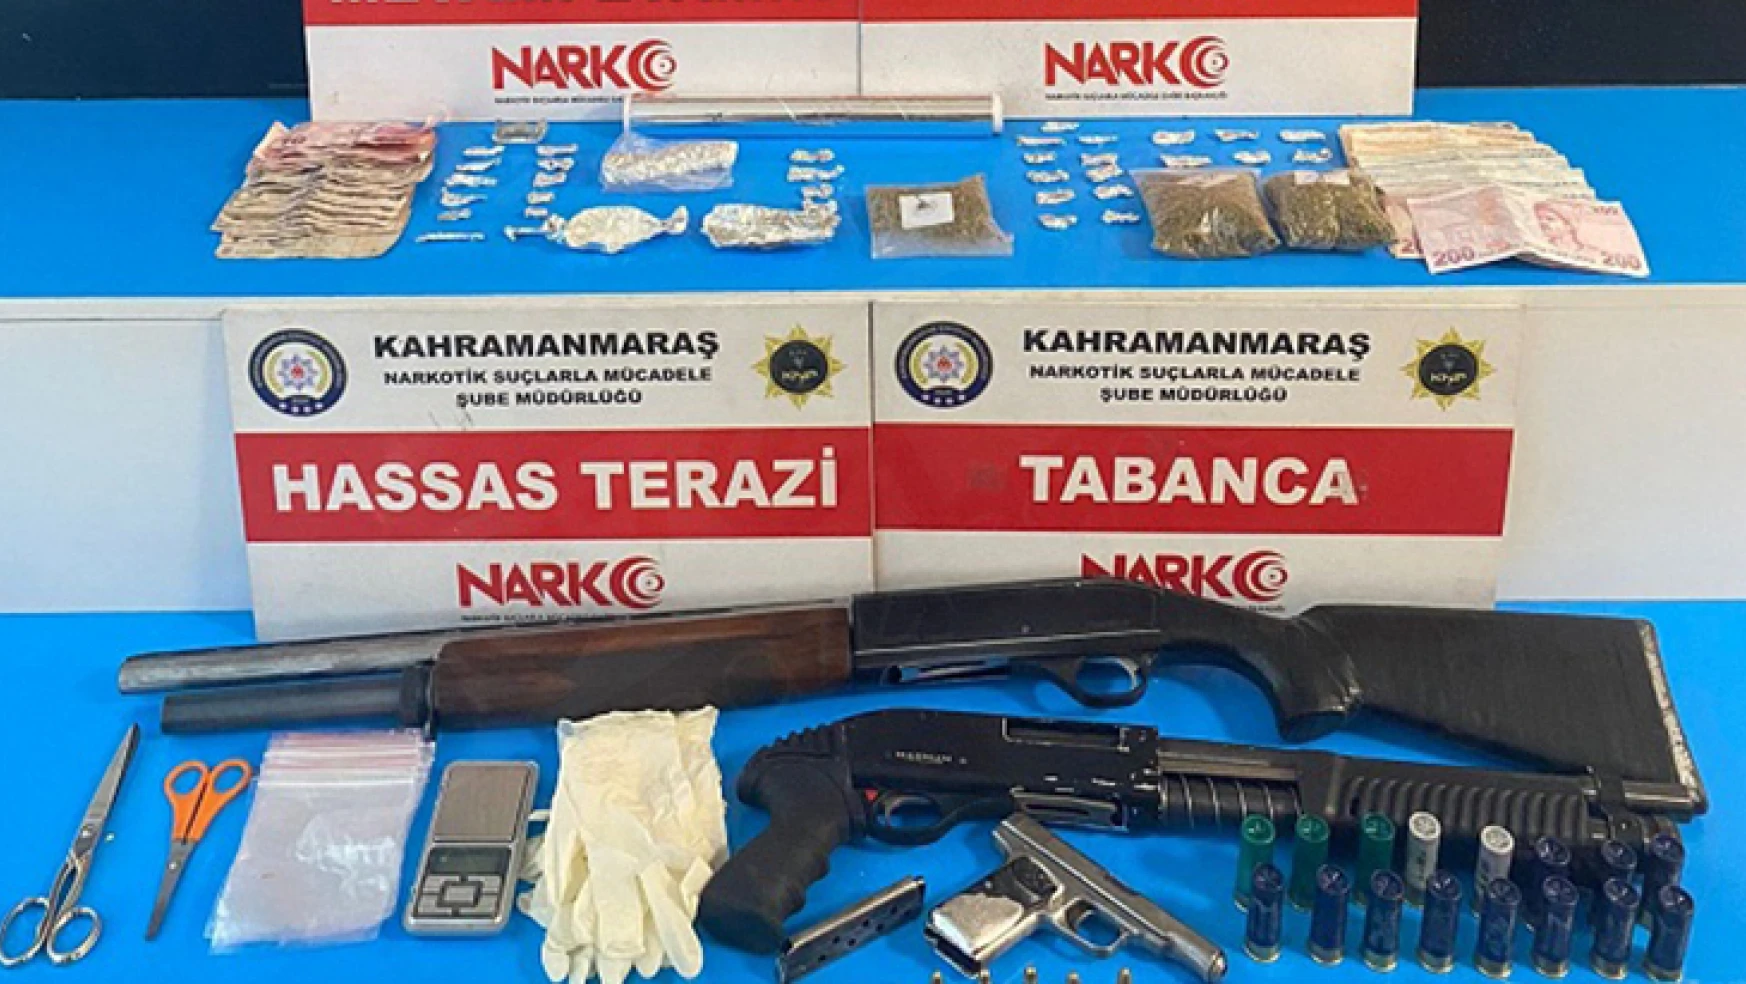 Kahramanmaraş'ta narkotik operasyon: 2 zanlı tutuklandı